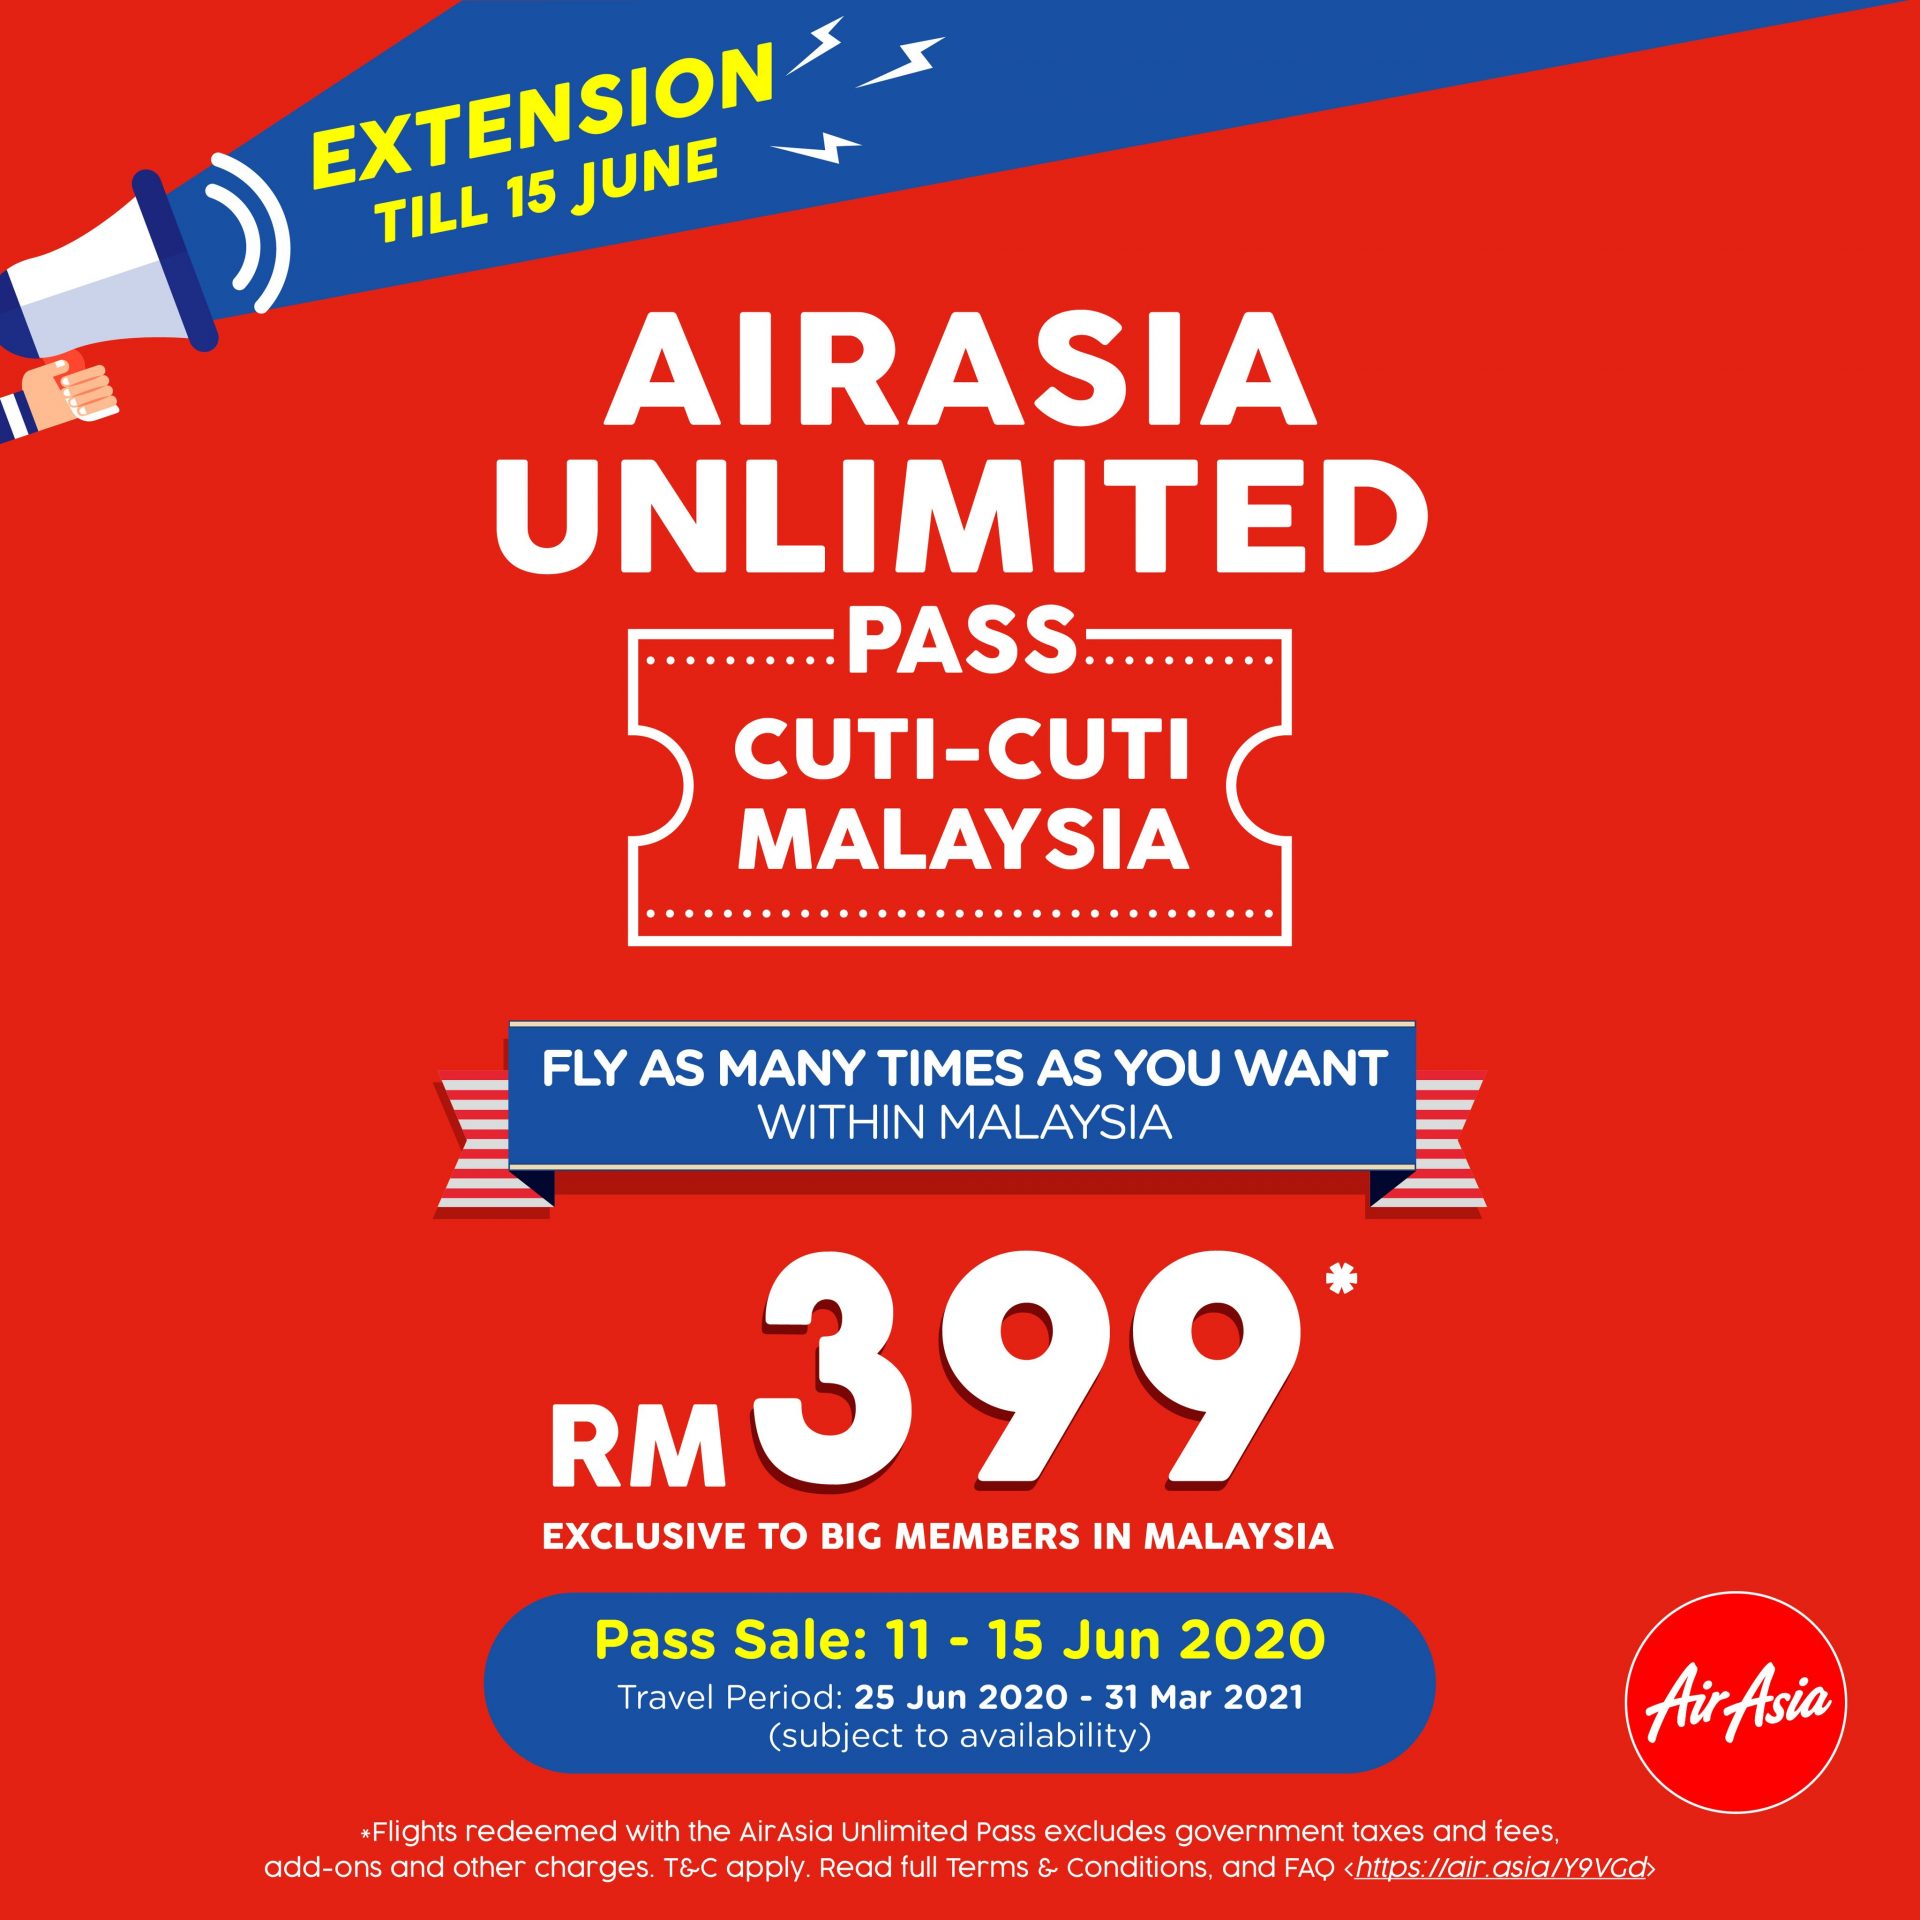 亚航在推特上发布的Unlimited Pass Cuti-Cuti Malaysia促销延长海报。-图片摘自Soya Cincau-